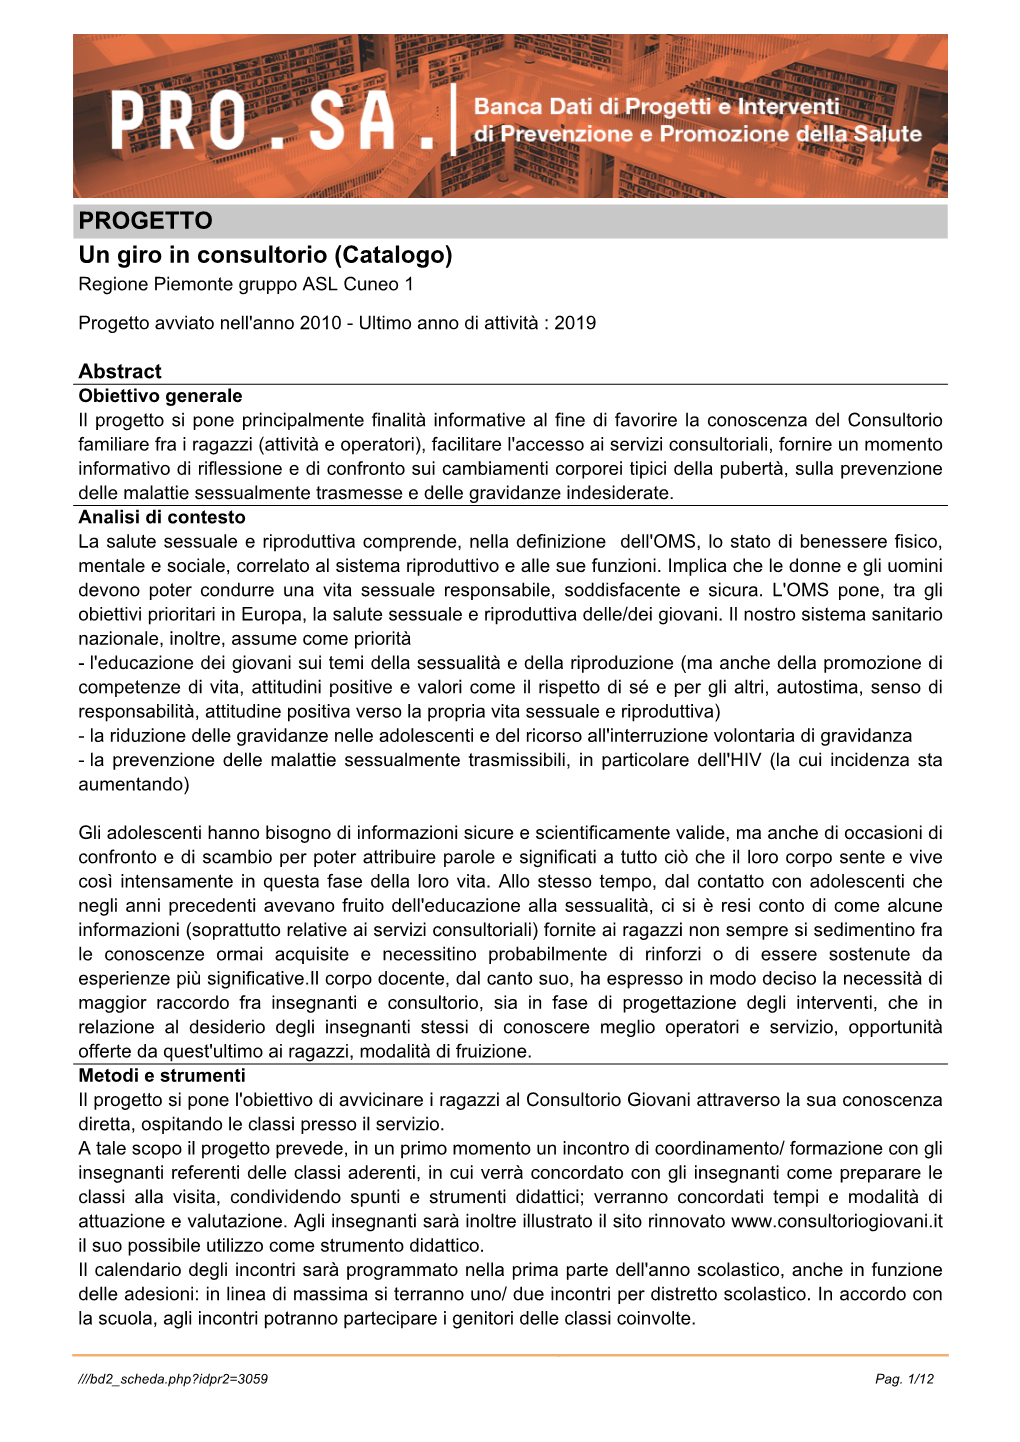 PROGETTO Un Giro in Consultorio (Catalogo) Regione Piemonte Gruppo ASL Cuneo 1